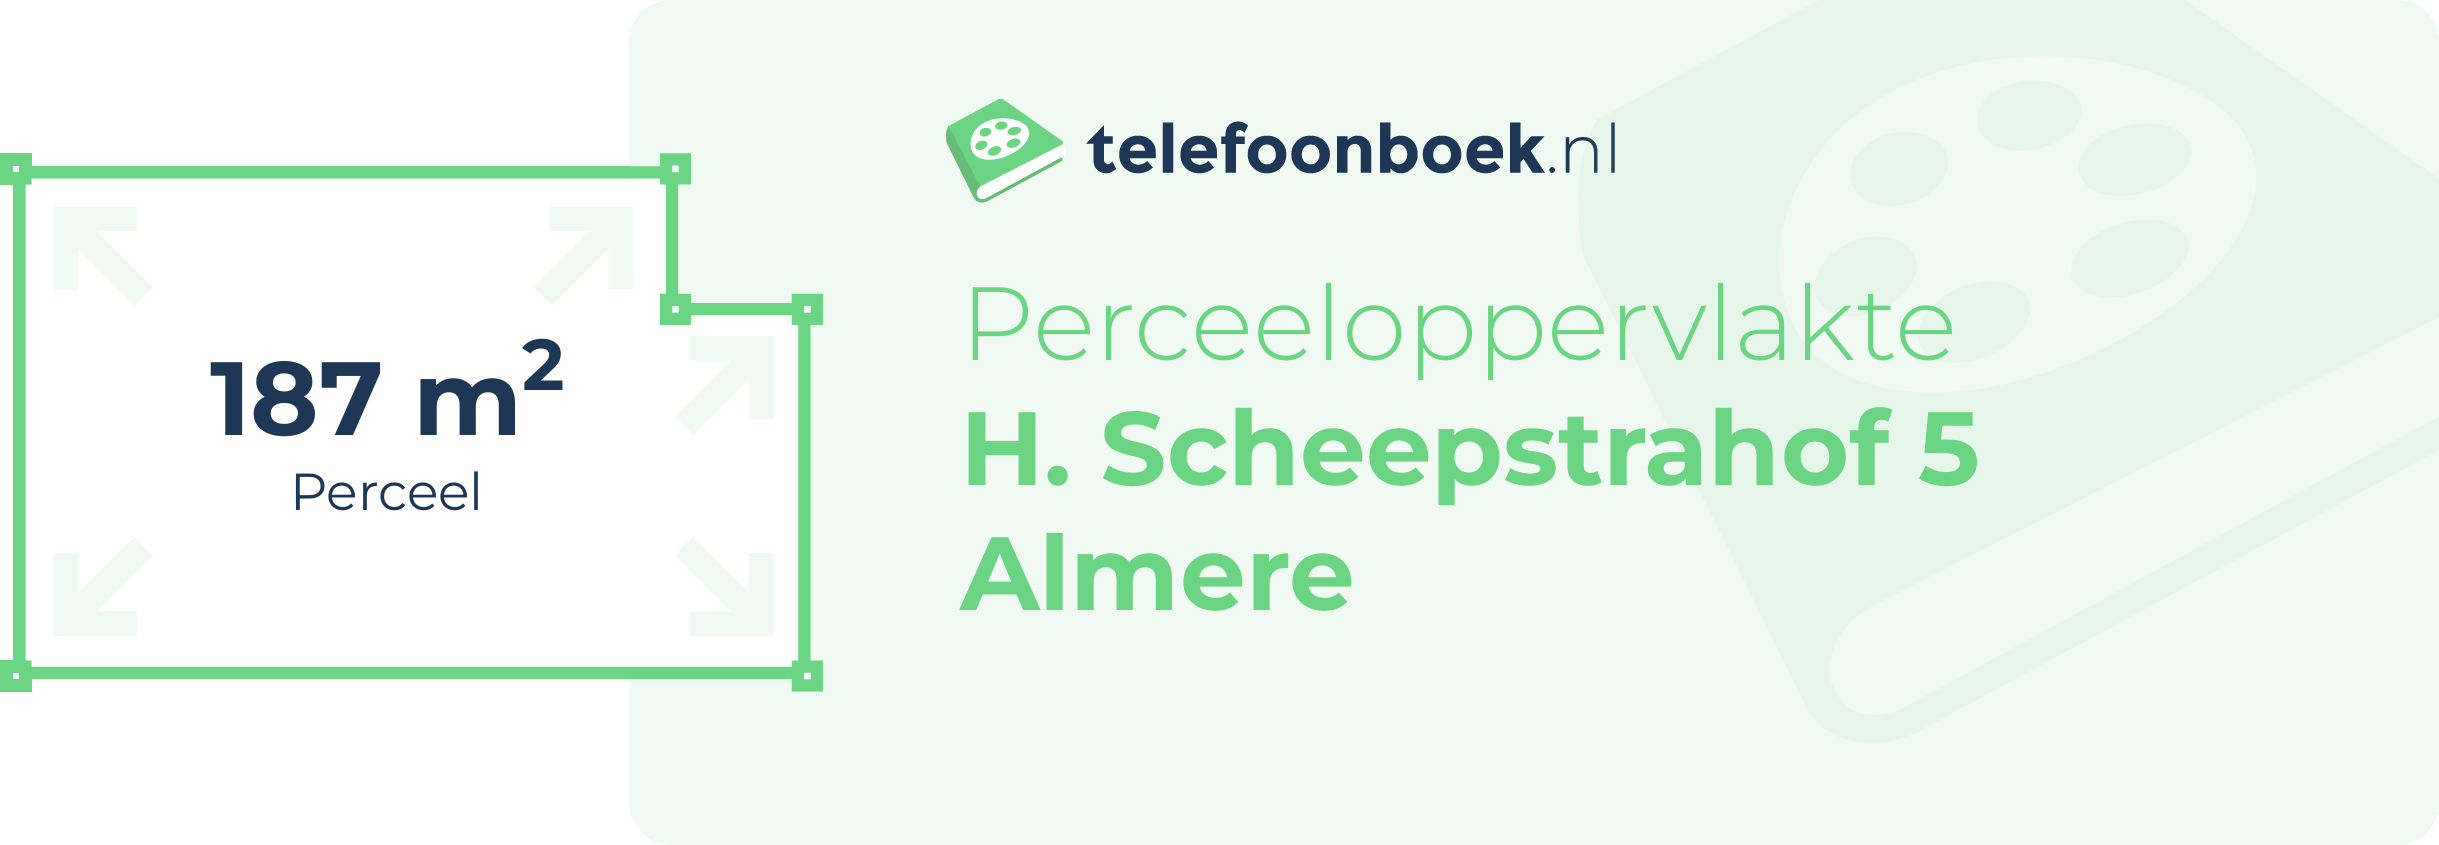 Perceeloppervlakte H. Scheepstrahof 5 Almere